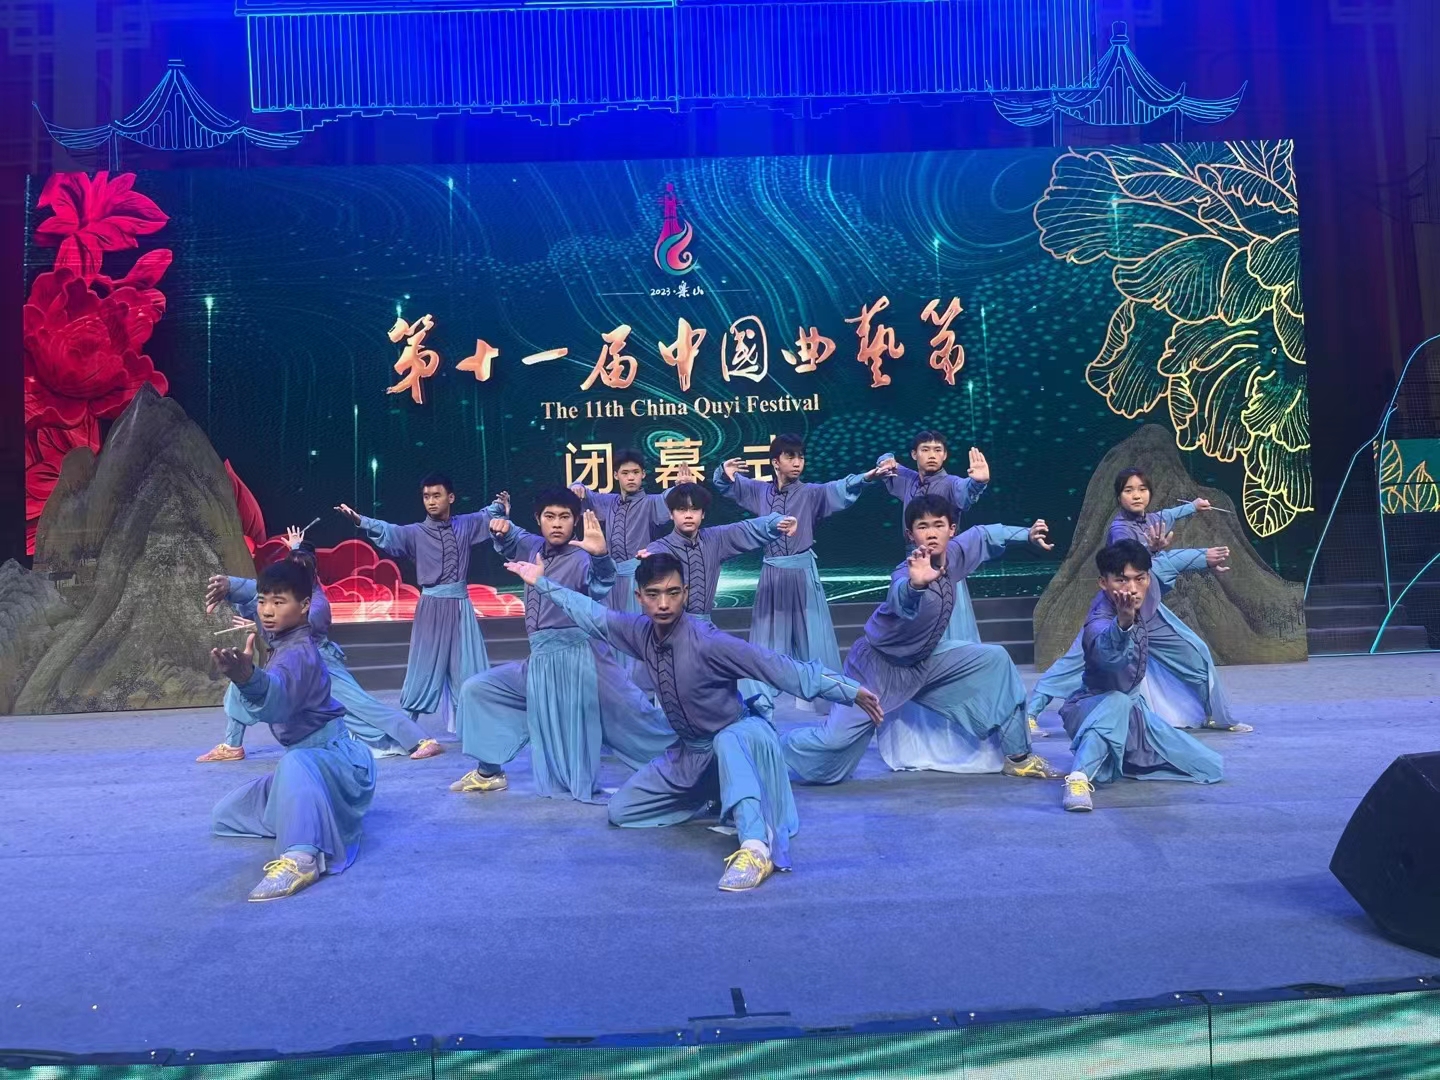 文旅学子亮相第十一届中国曲艺节闭幕式.jpg